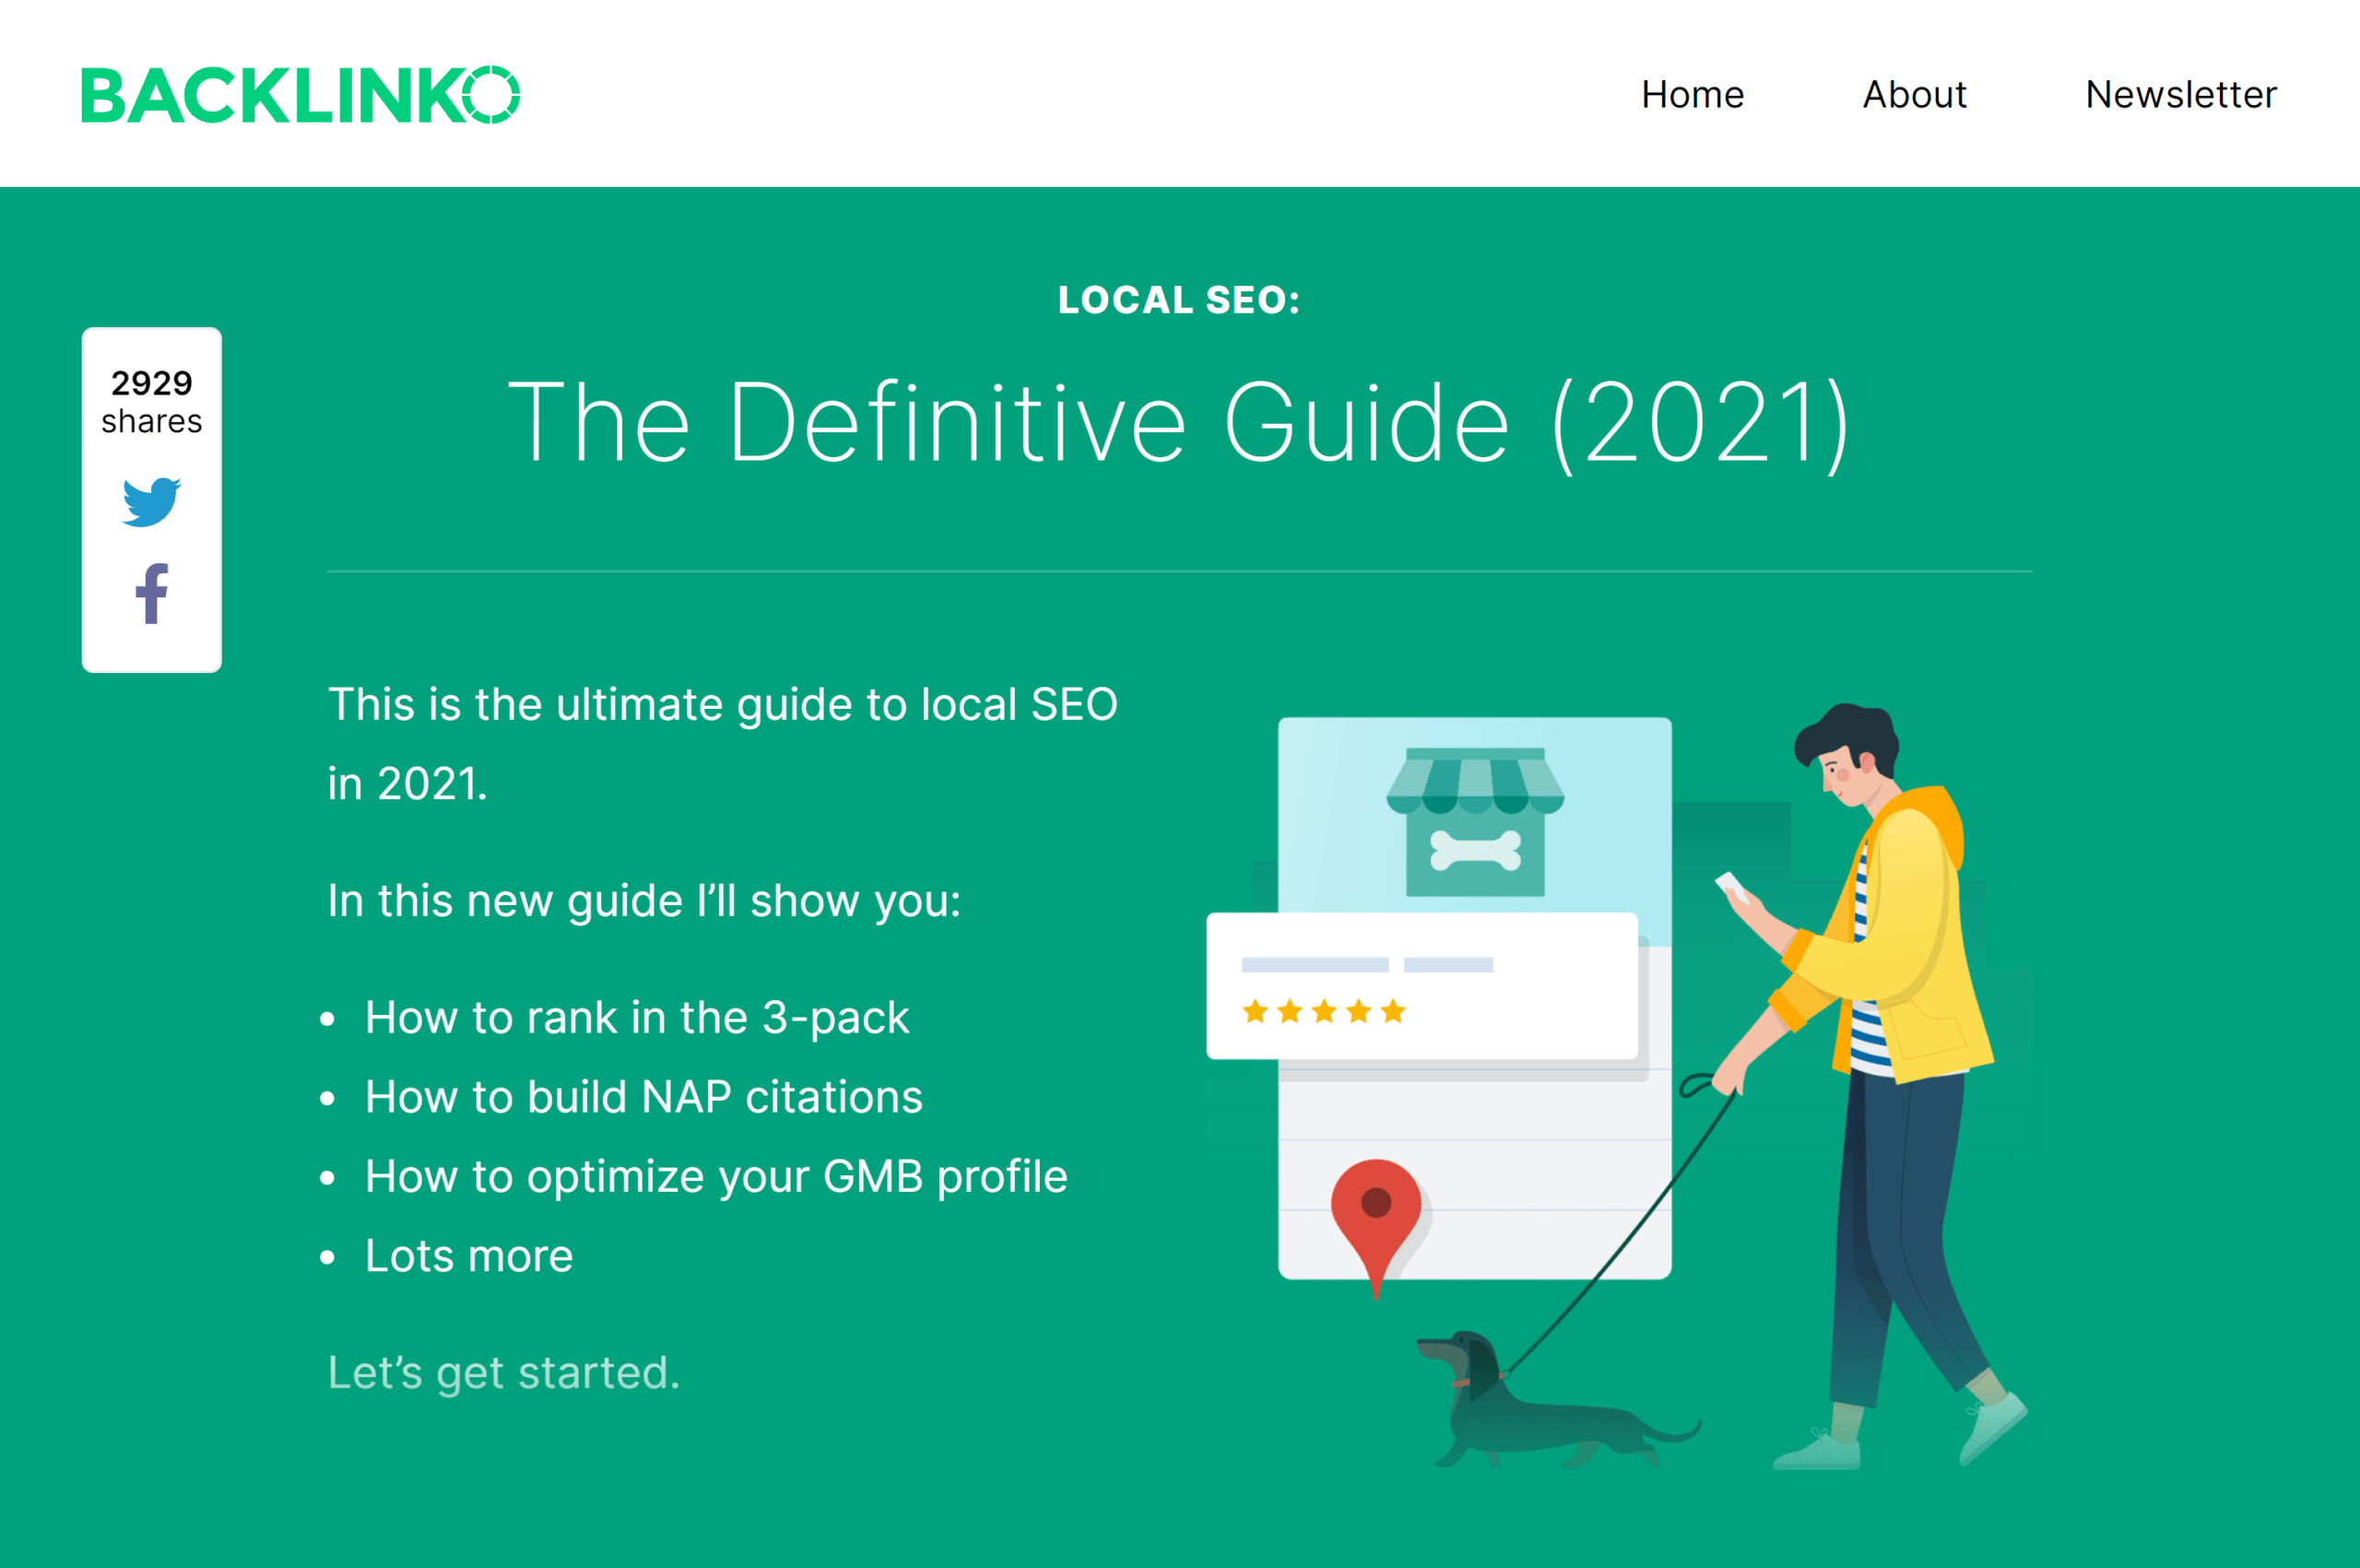 backlinko-local-seo-guide-2021